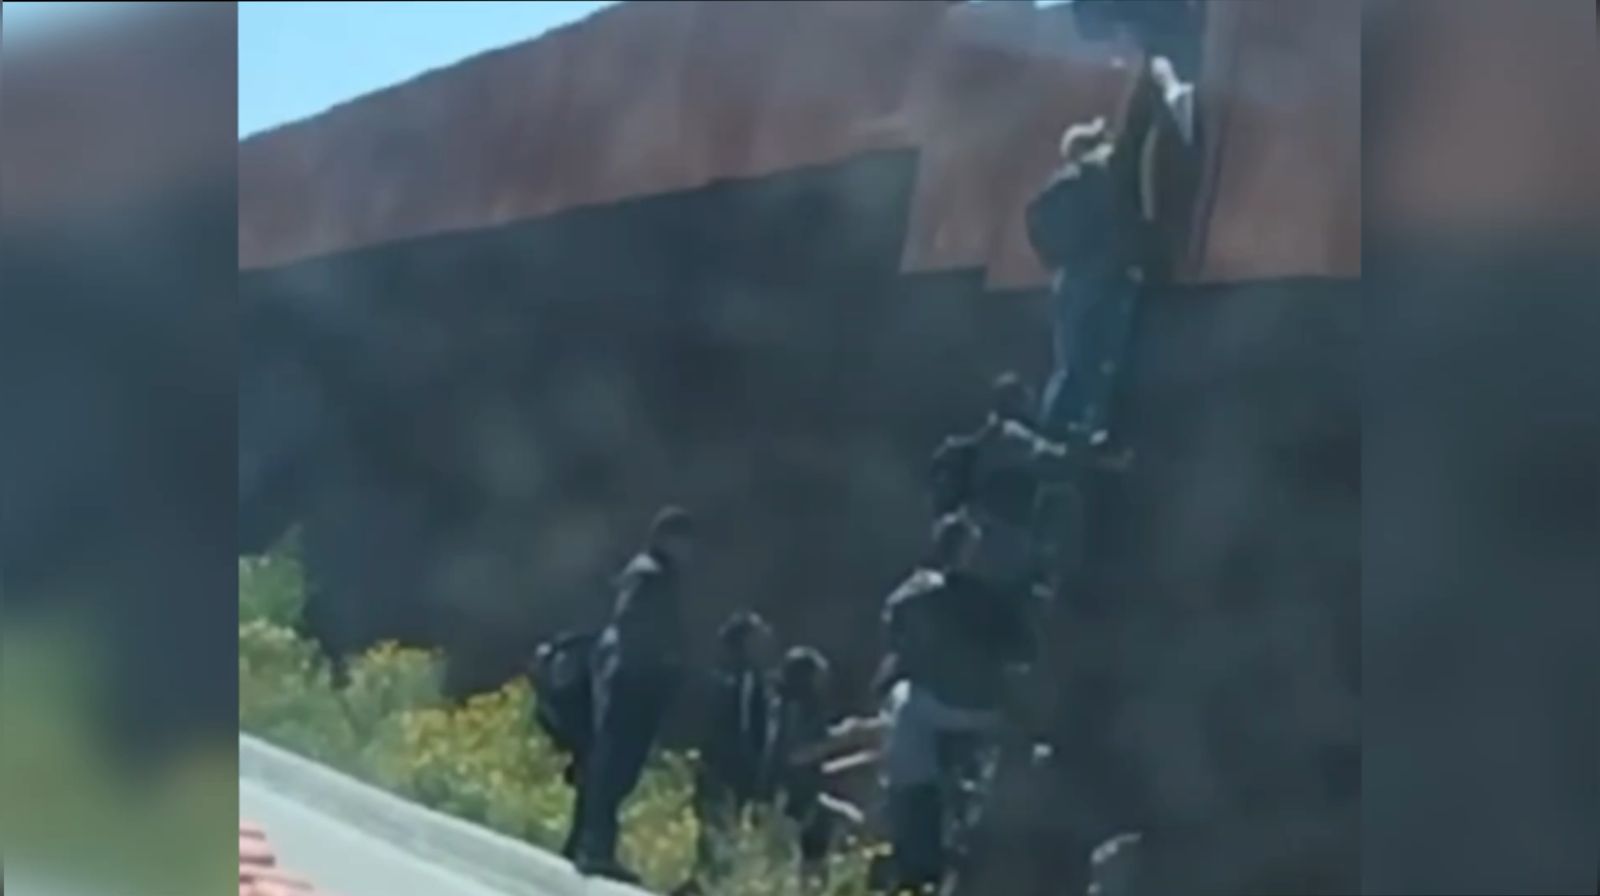 [VIDEO] Cruzan migrantes el muro fronterizo con mega escalera